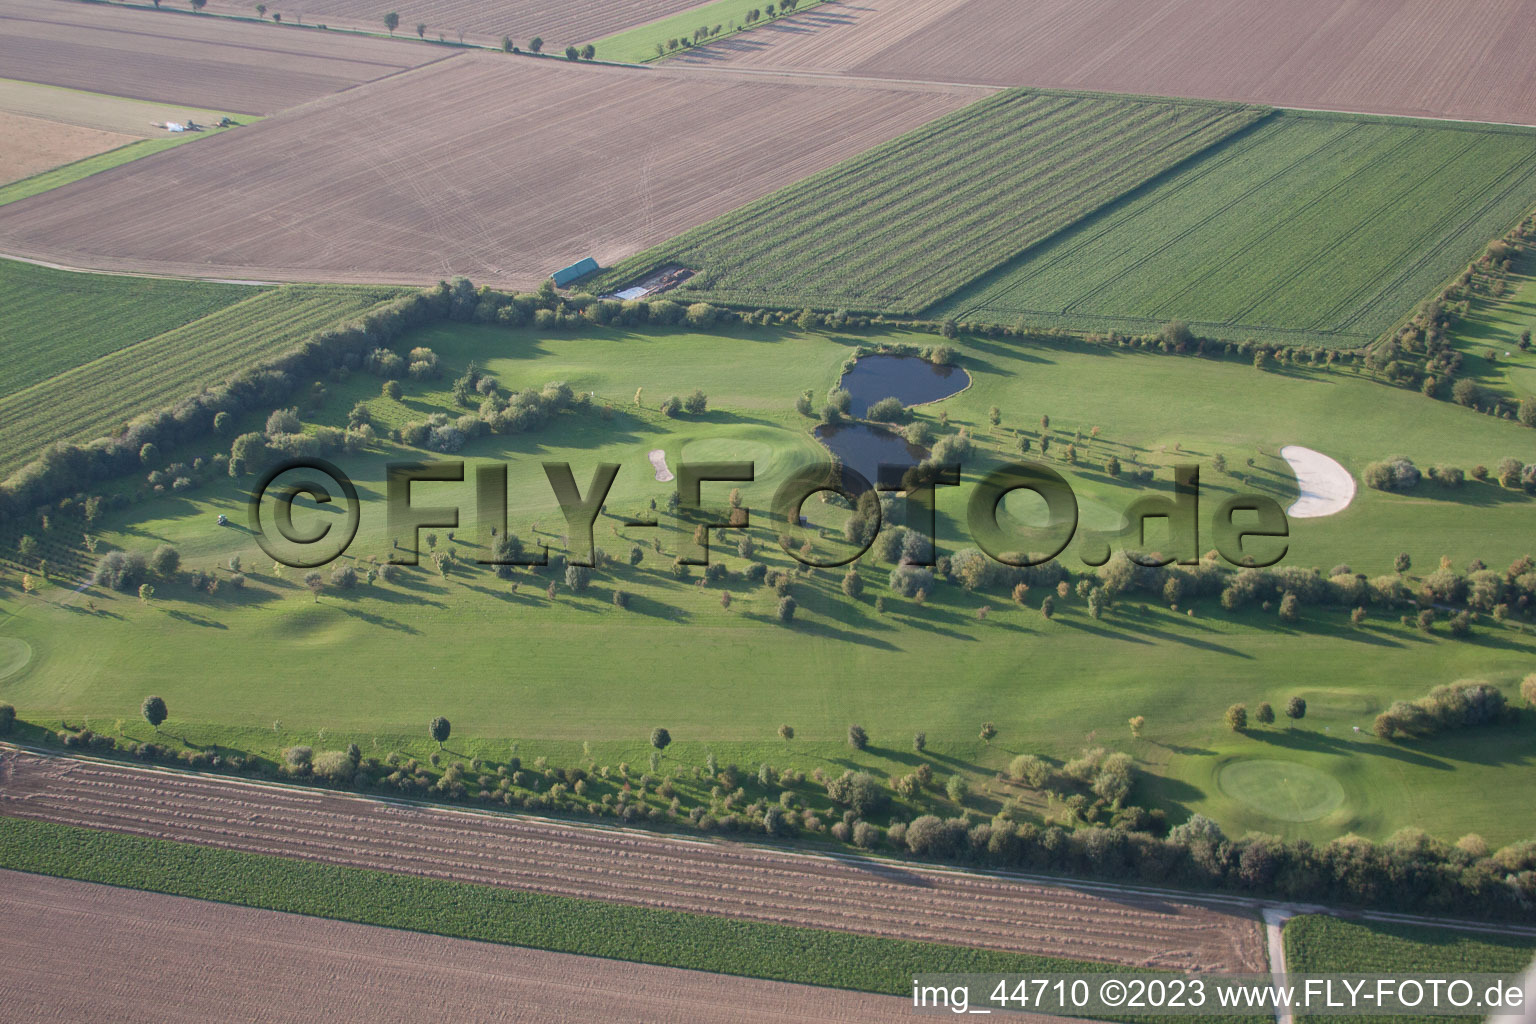 Aerial photograpy of Golf club Mönchengladbach-Wanlo eV in Mönchengladbach in the state North Rhine-Westphalia, Germany